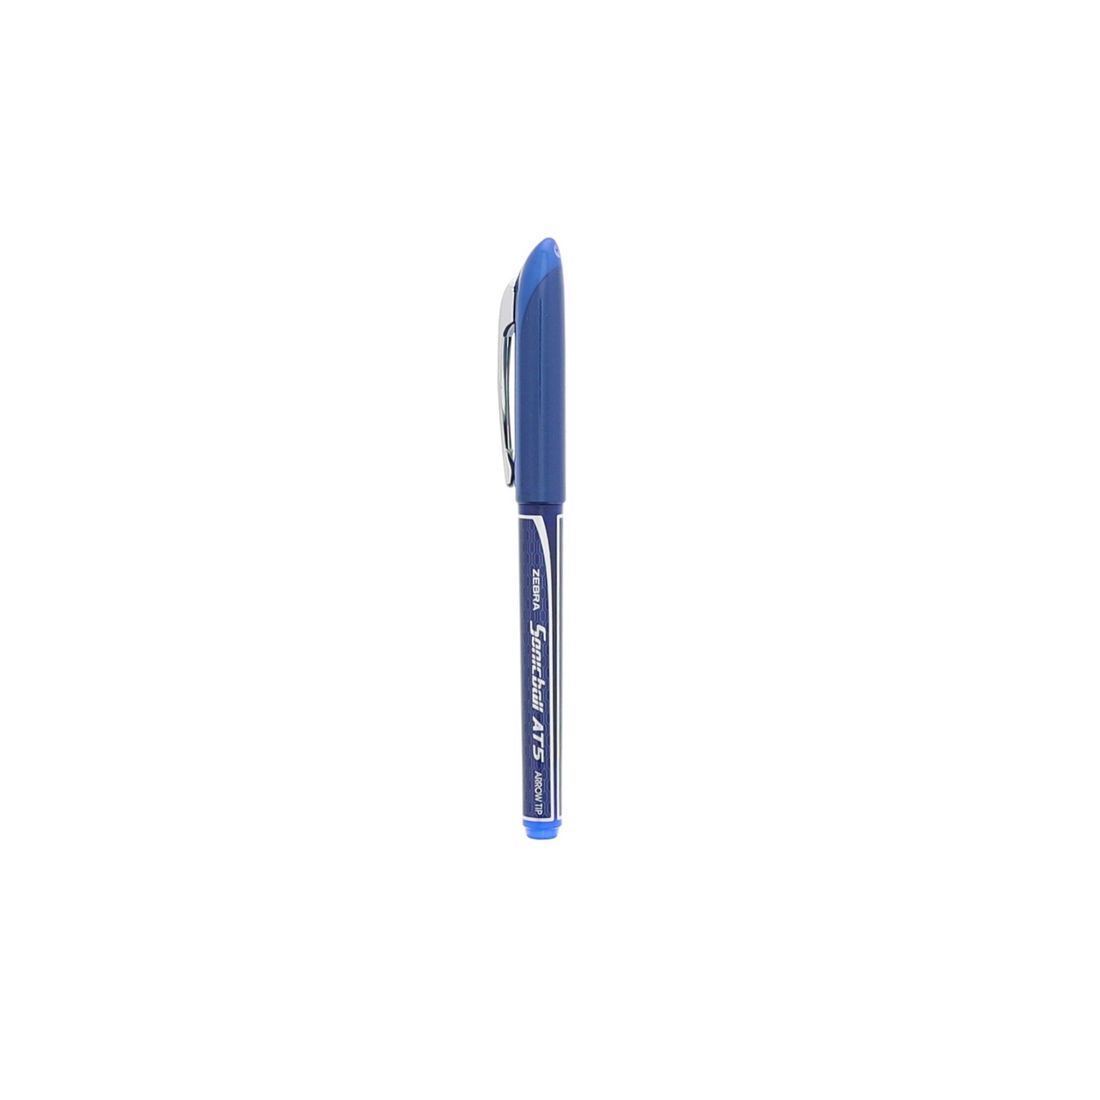 زيبرا 2 قلم سائل سونيك AT 0.5 لون ازرق